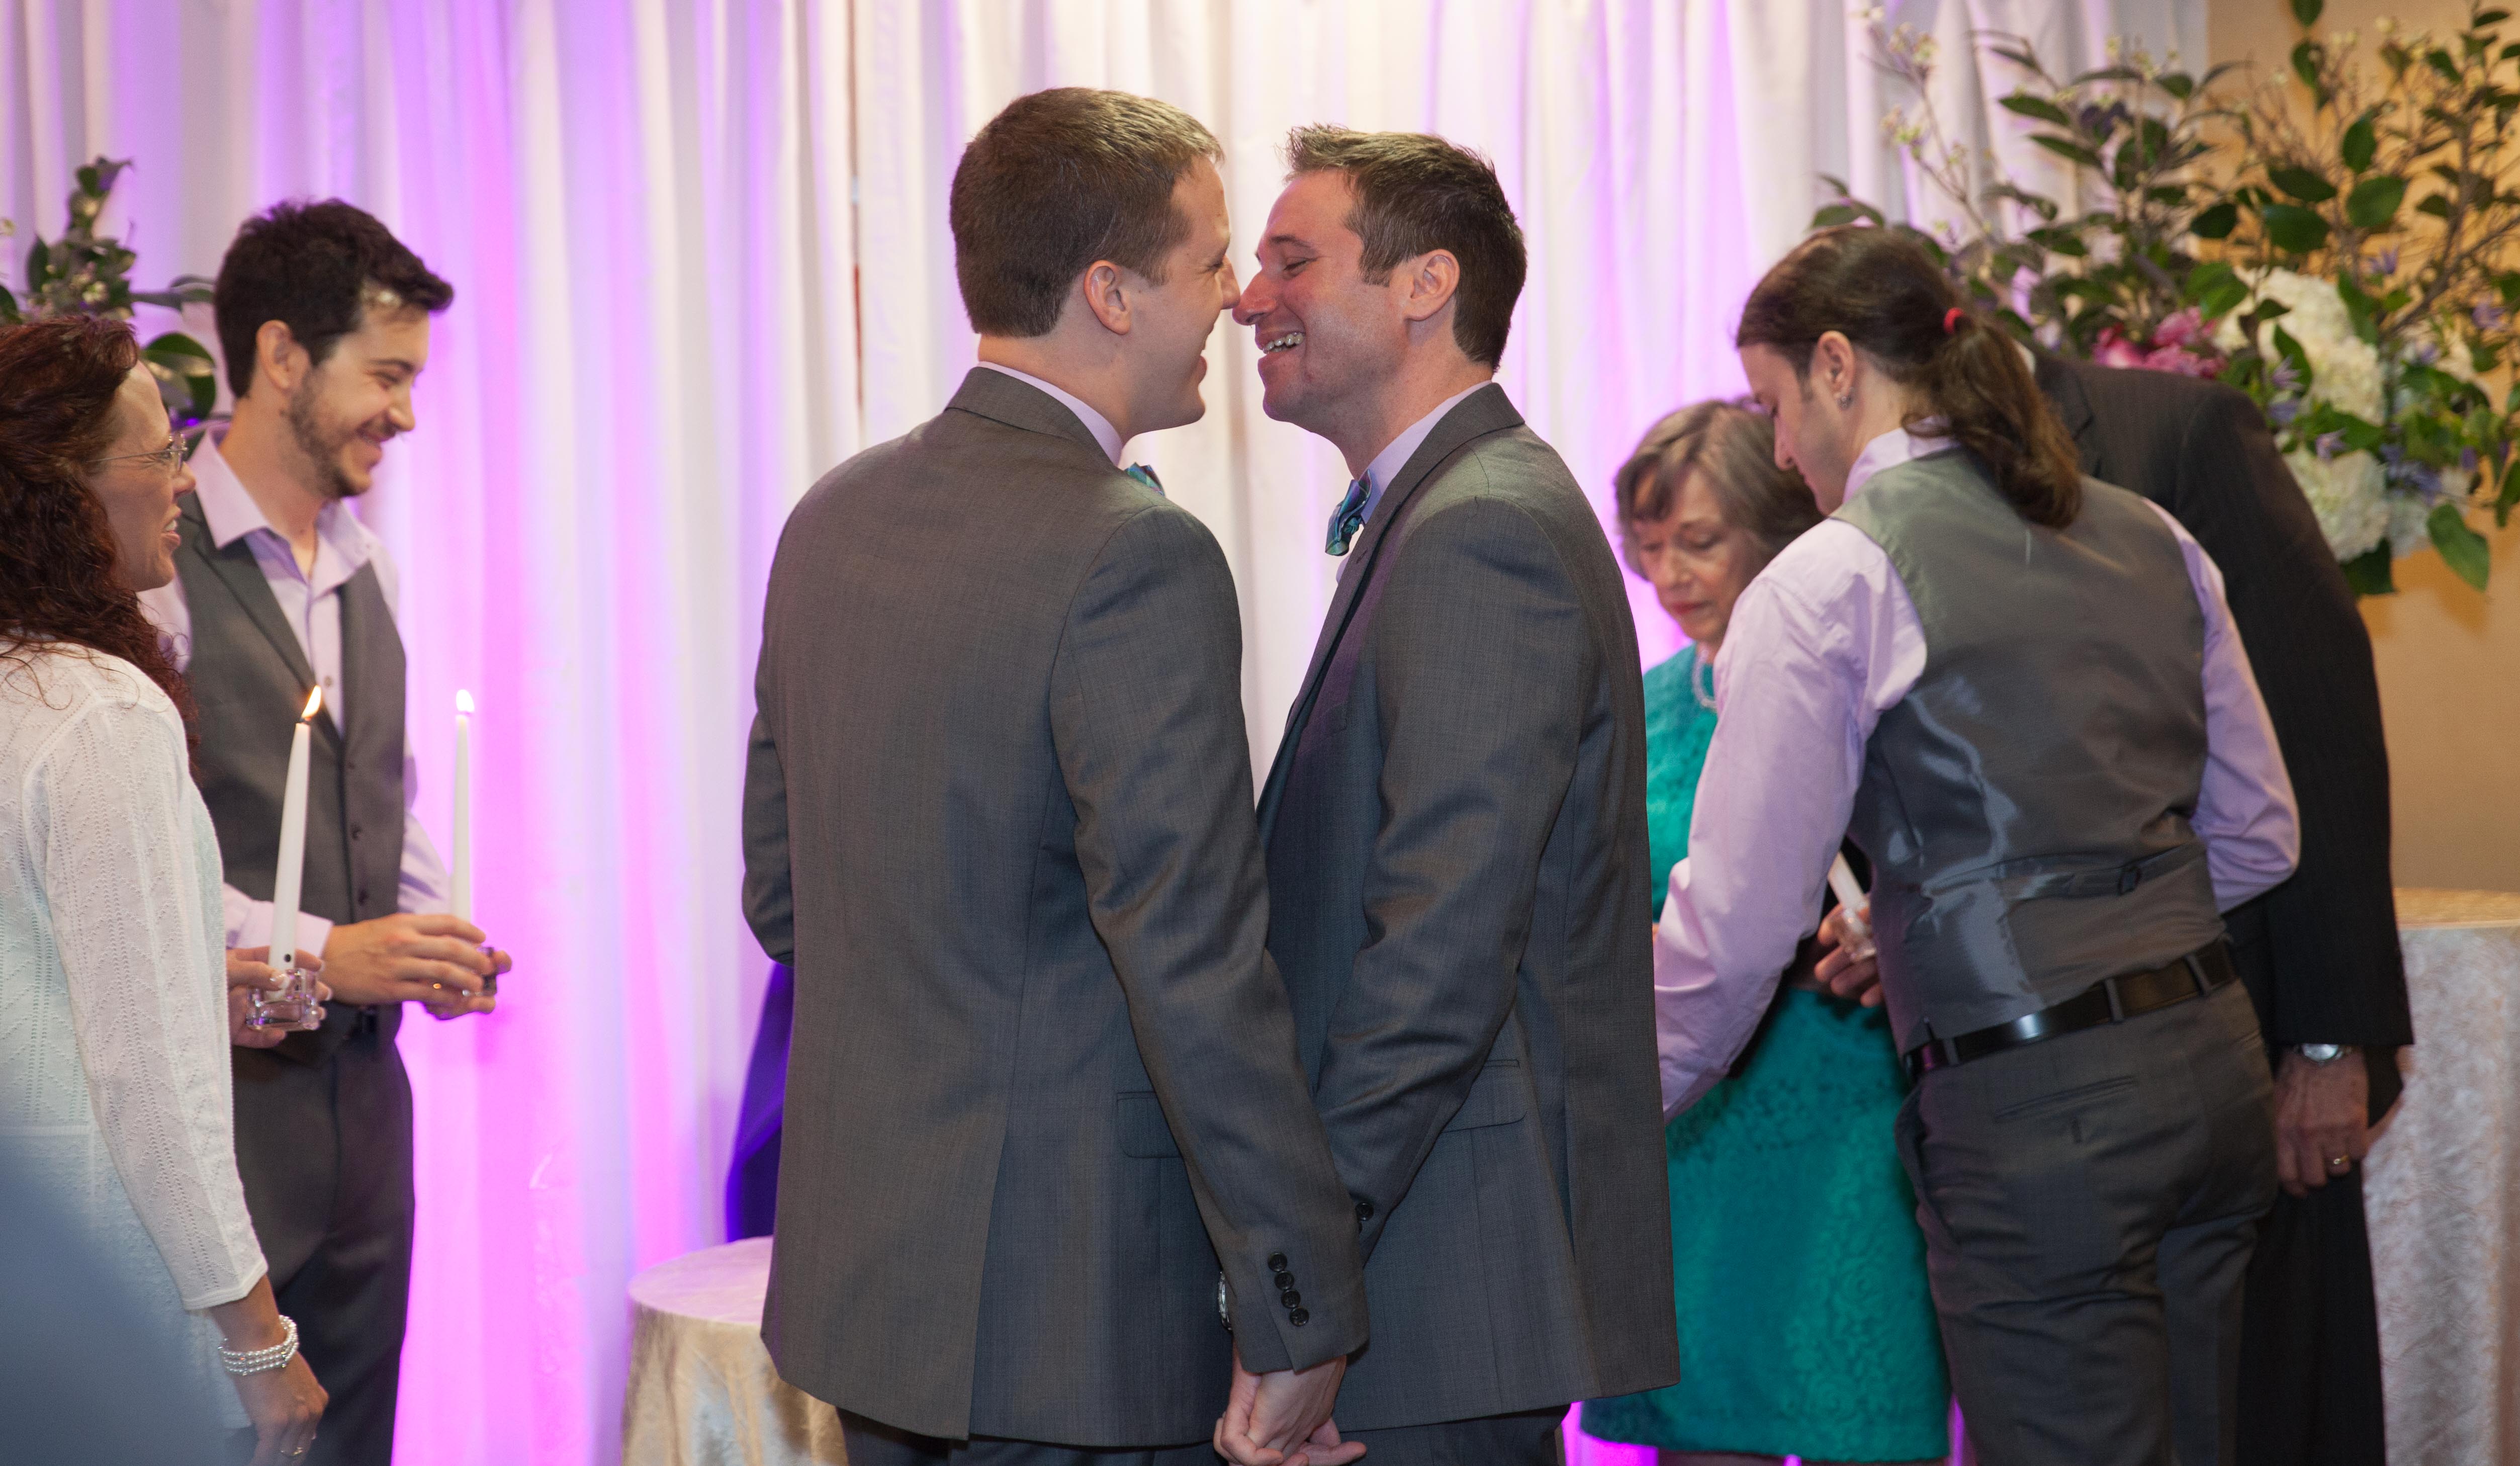 same sex wedding photo taken at the Hyatt Greenwich CT